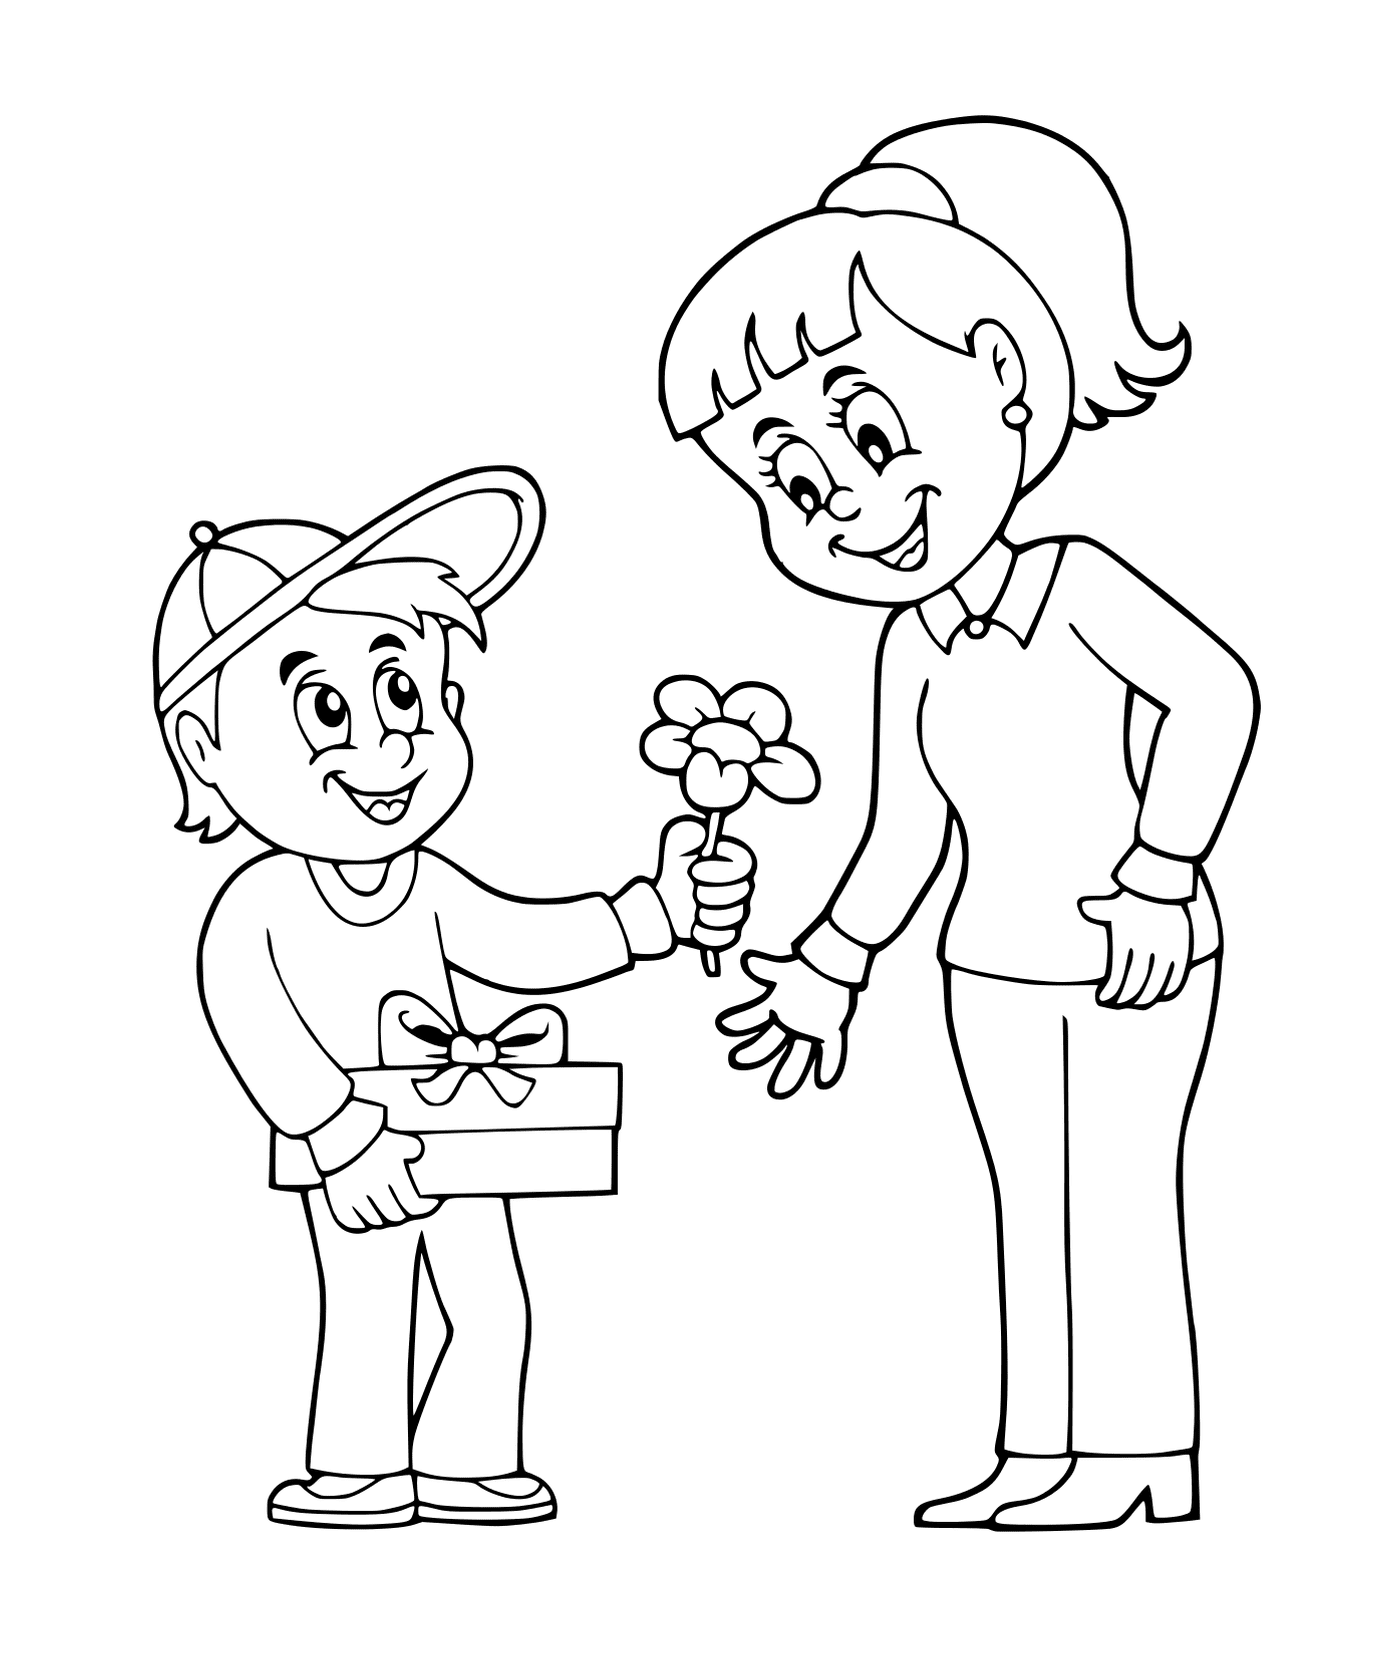  Um menino oferecendo flores para uma menina 